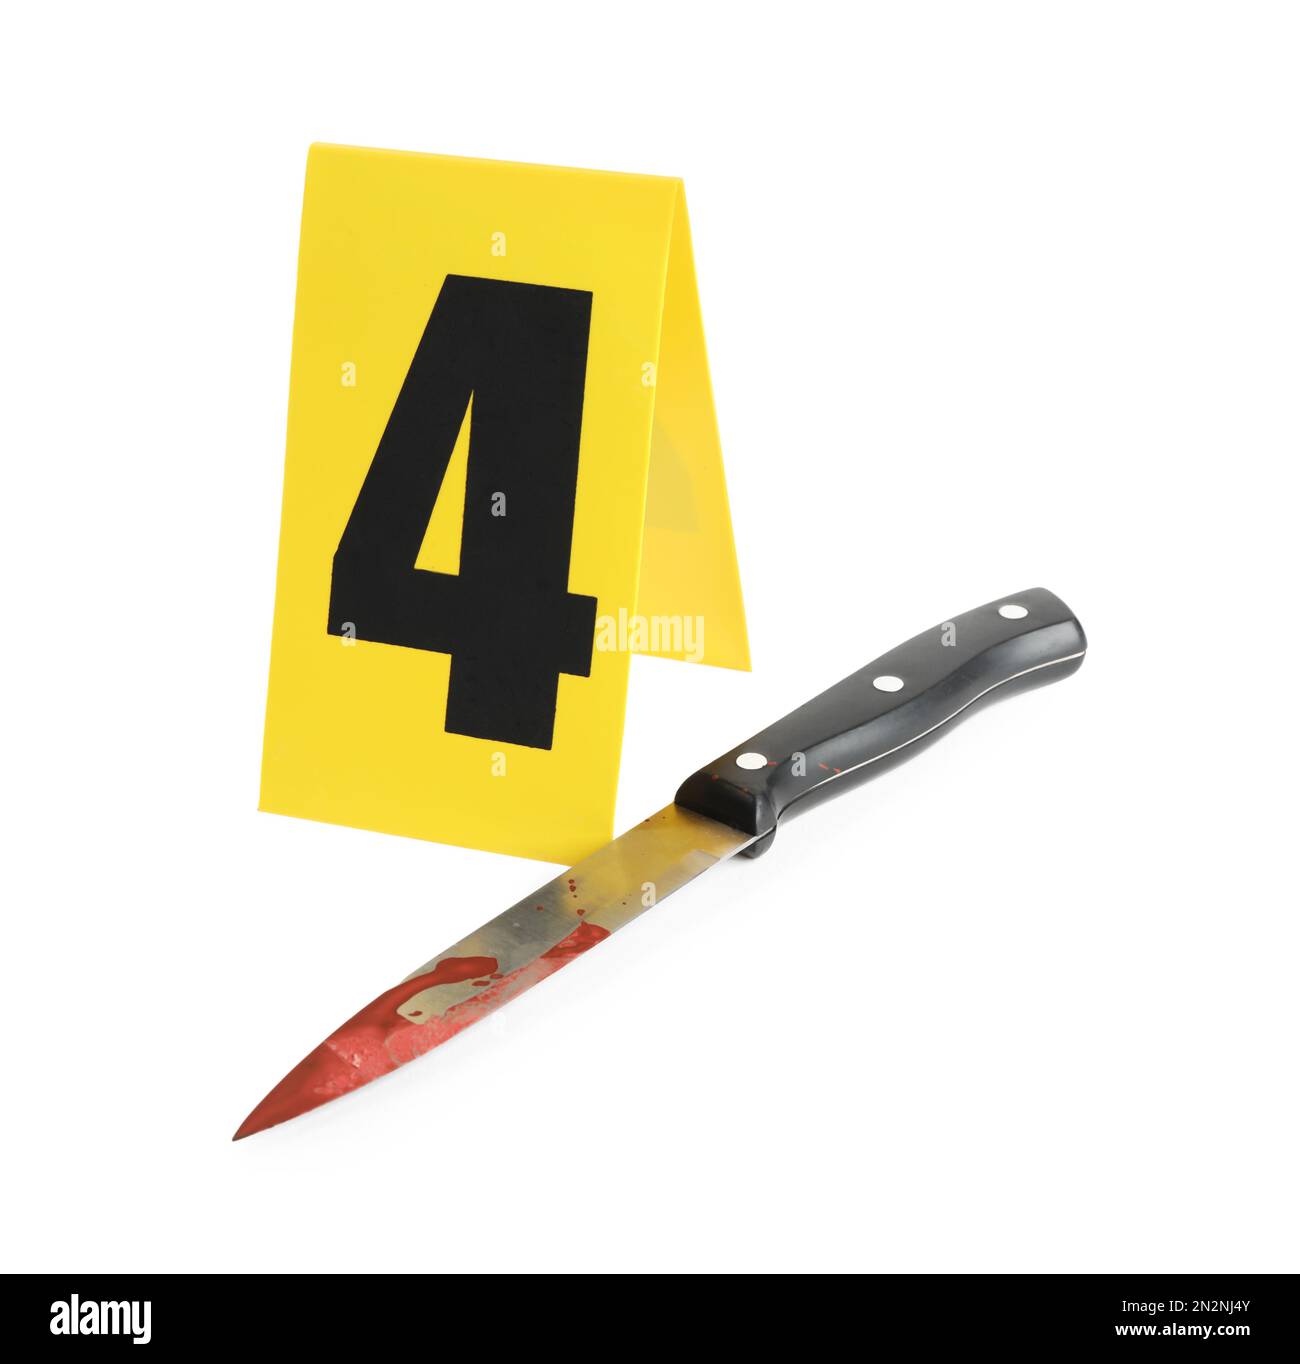 Couteau sanglant et marqueur de scène de crime avec le numéro quatre isolé sur blanc Banque D'Images